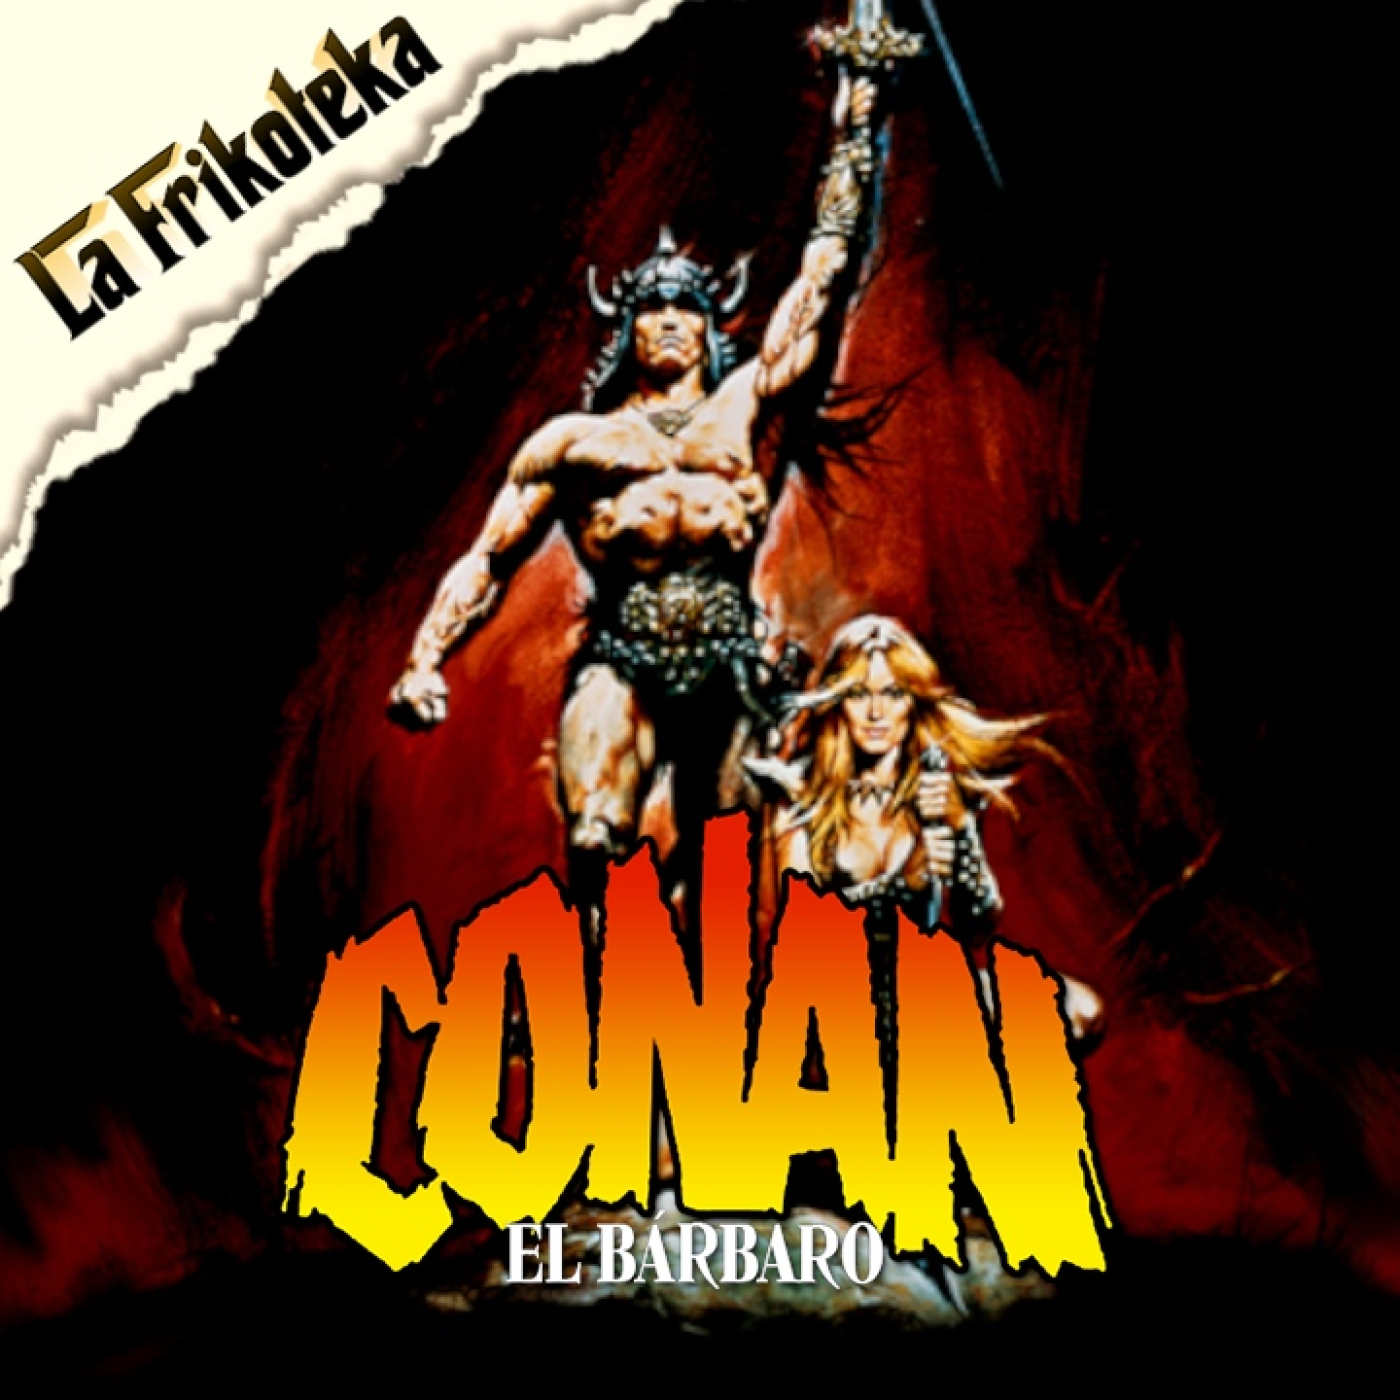 168 – Conan, el bárbaro (1982)